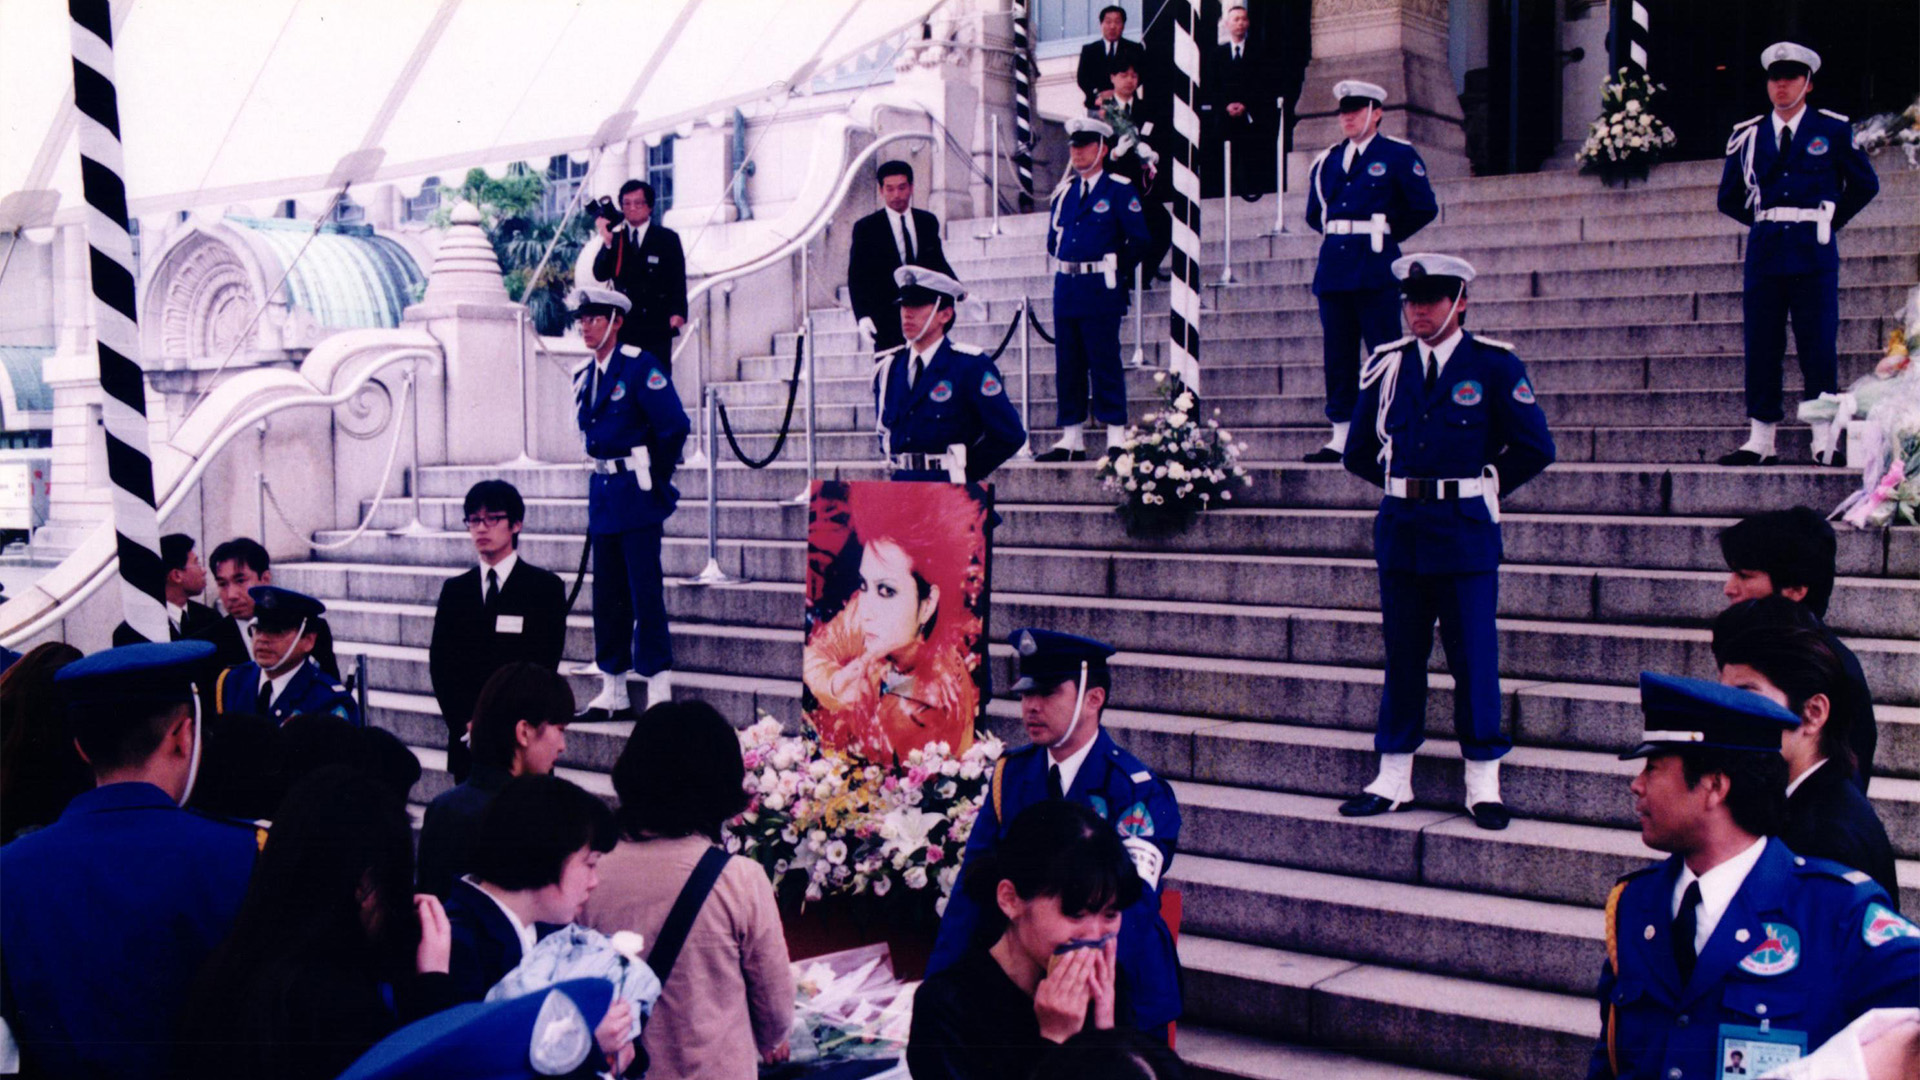 1998年05月 築地本願寺にて元xjapan Hide葬儀 述べ800名動員の特別警備を実施 Risingsun Security Service Co Ltd